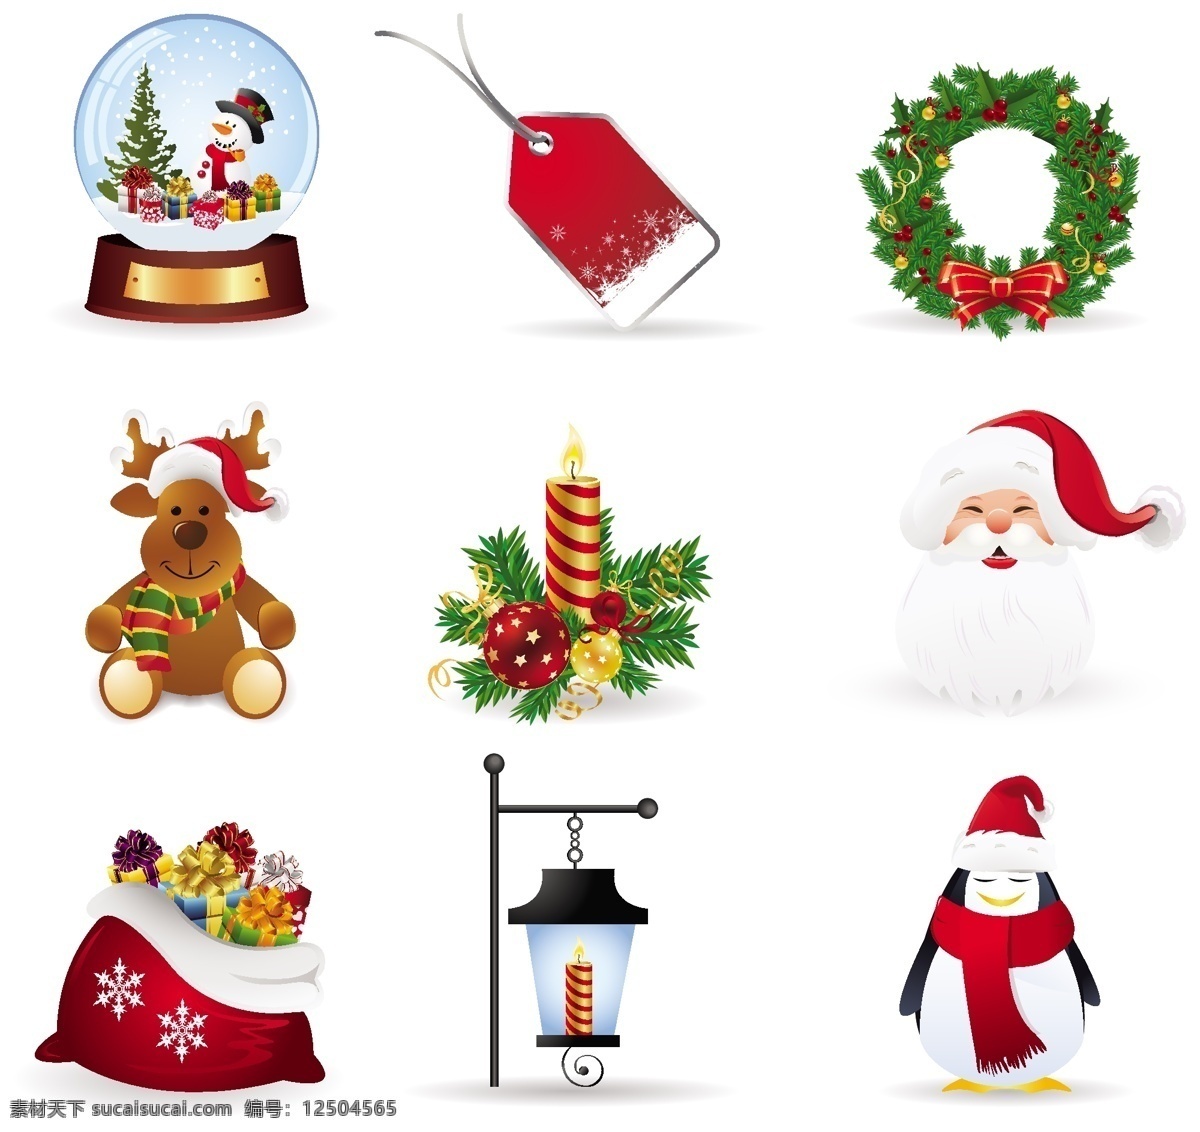 圣诞节 元素 矢量 二 灯 房子 花环 节日 蜡烛 礼物 麋鹿 人物 圣诞老人 袜子 雪橇 雪人 雪花 手套 圣诞树 天使 节日素材